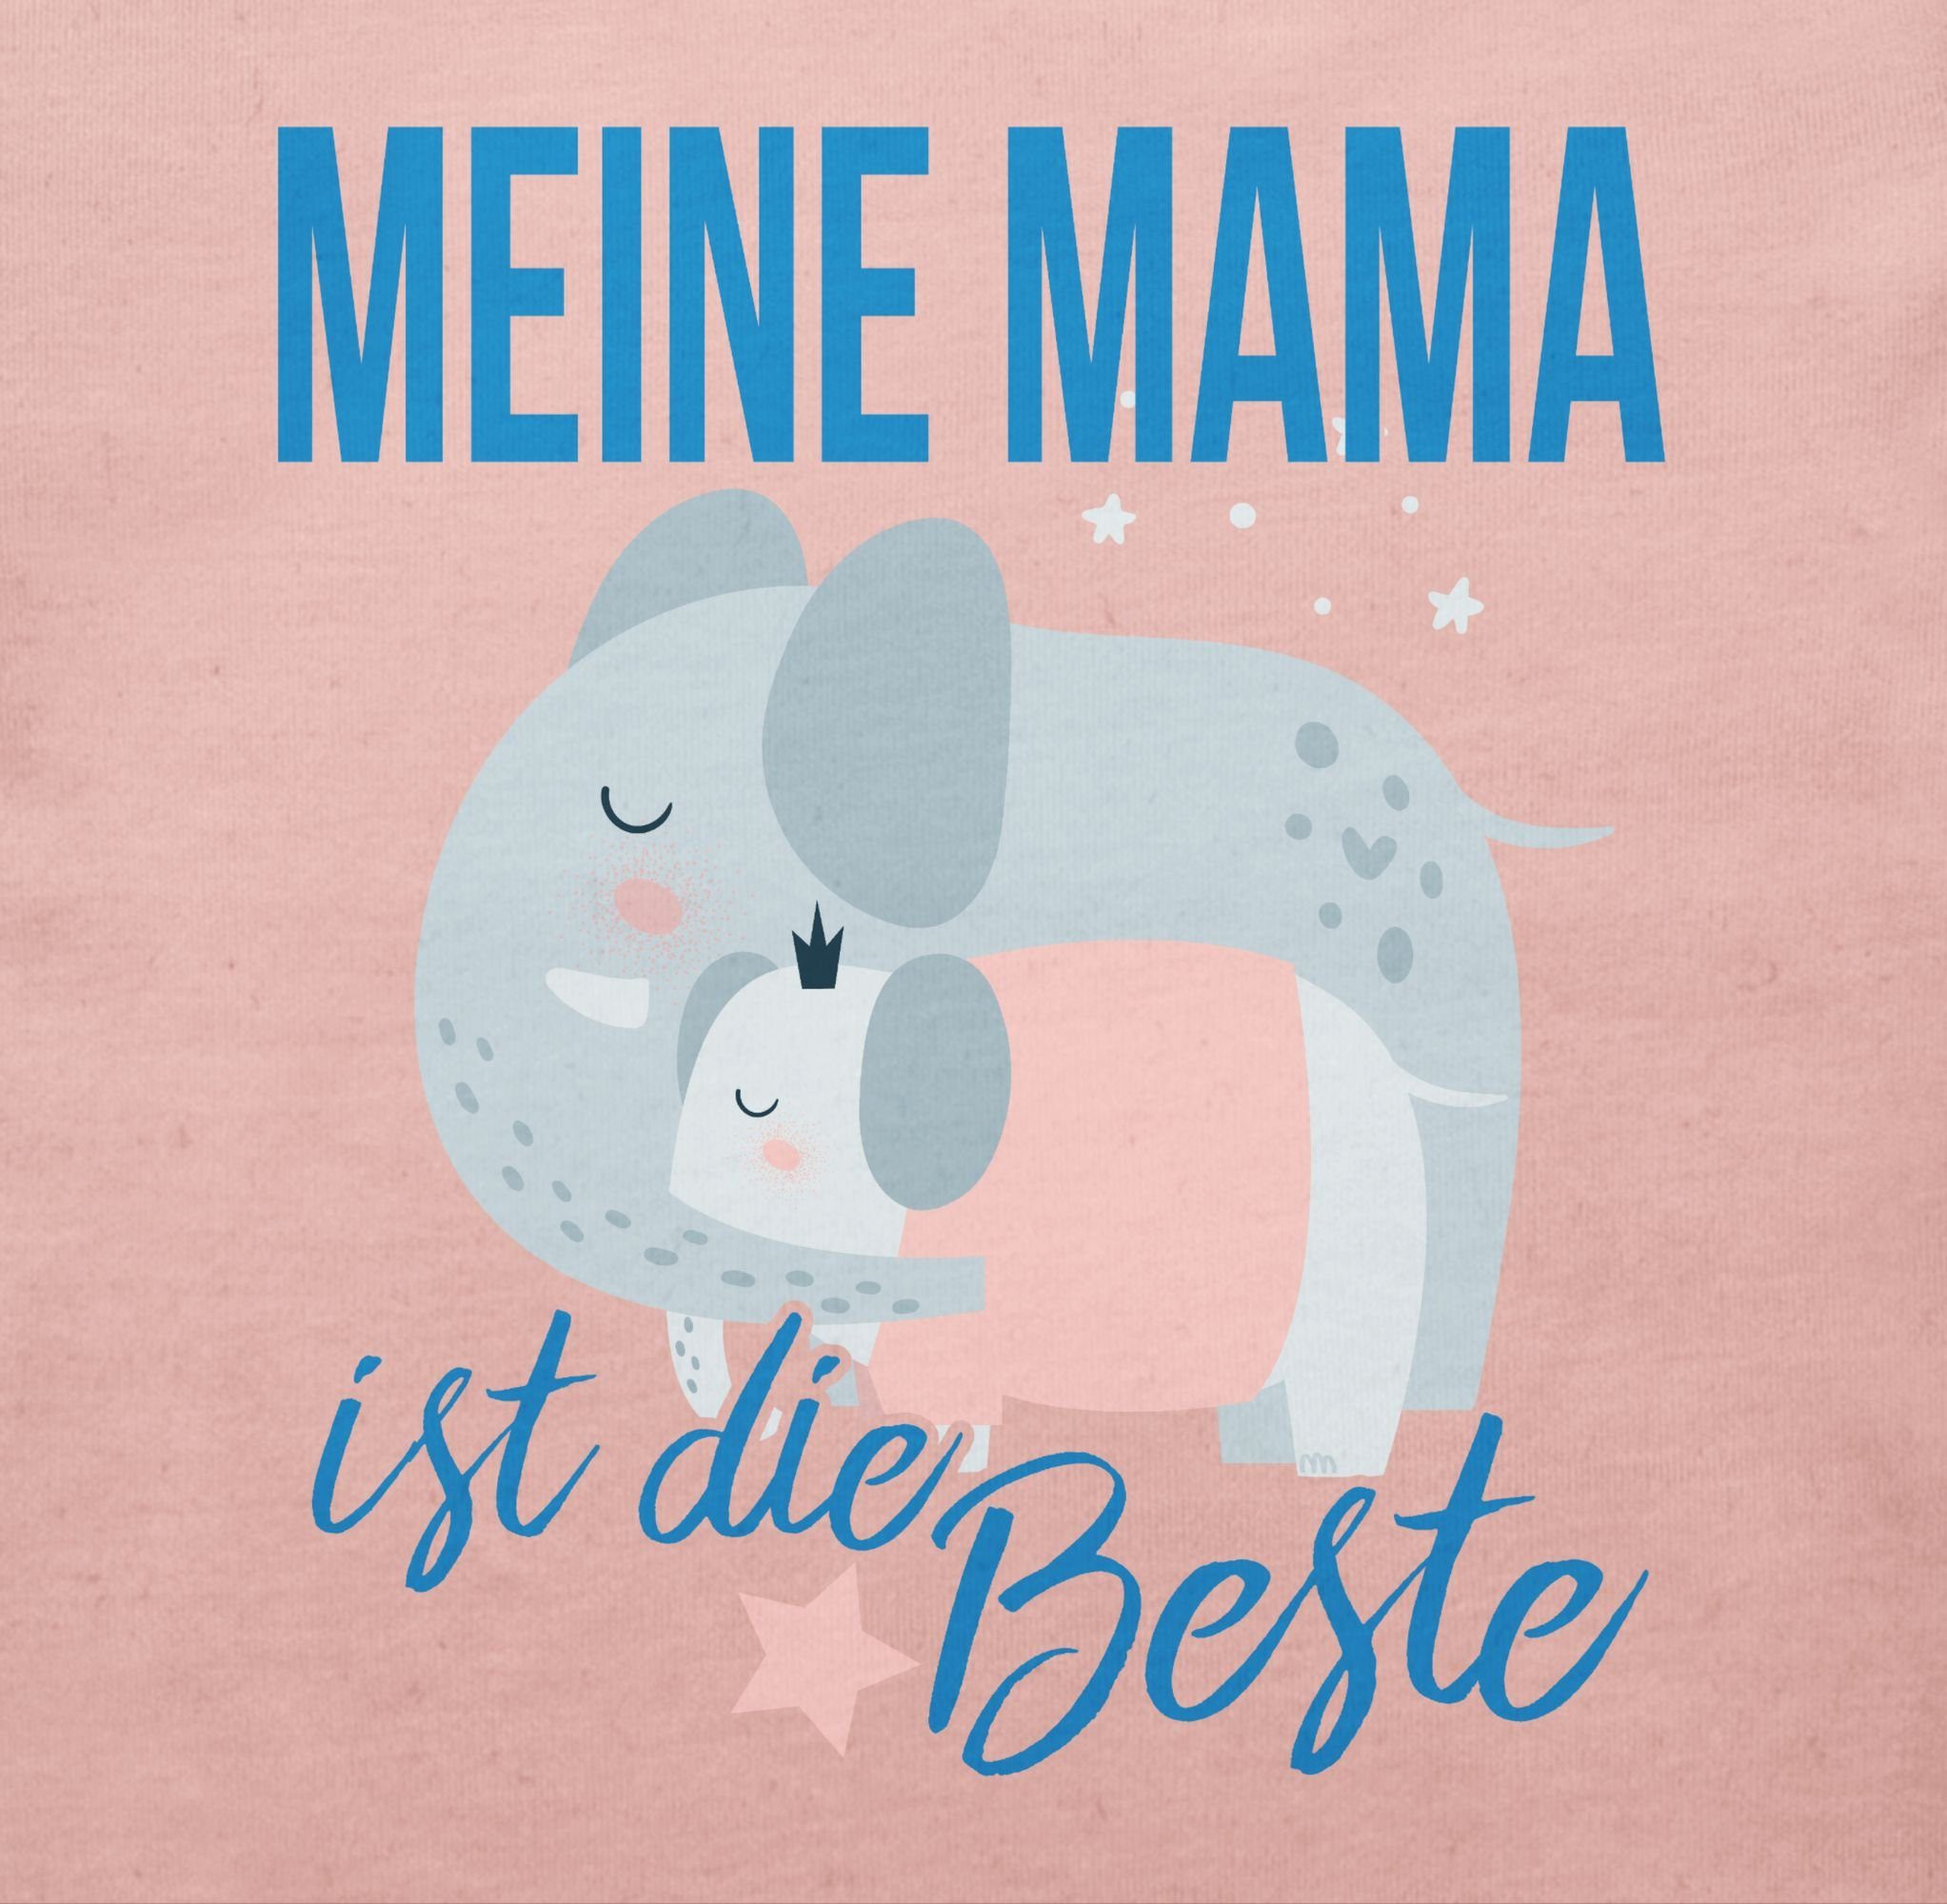 Mama Babyrosa Shirtracer T-Shirt Meine 1 ist Elefanten Muttertagsgeschenk Beste die